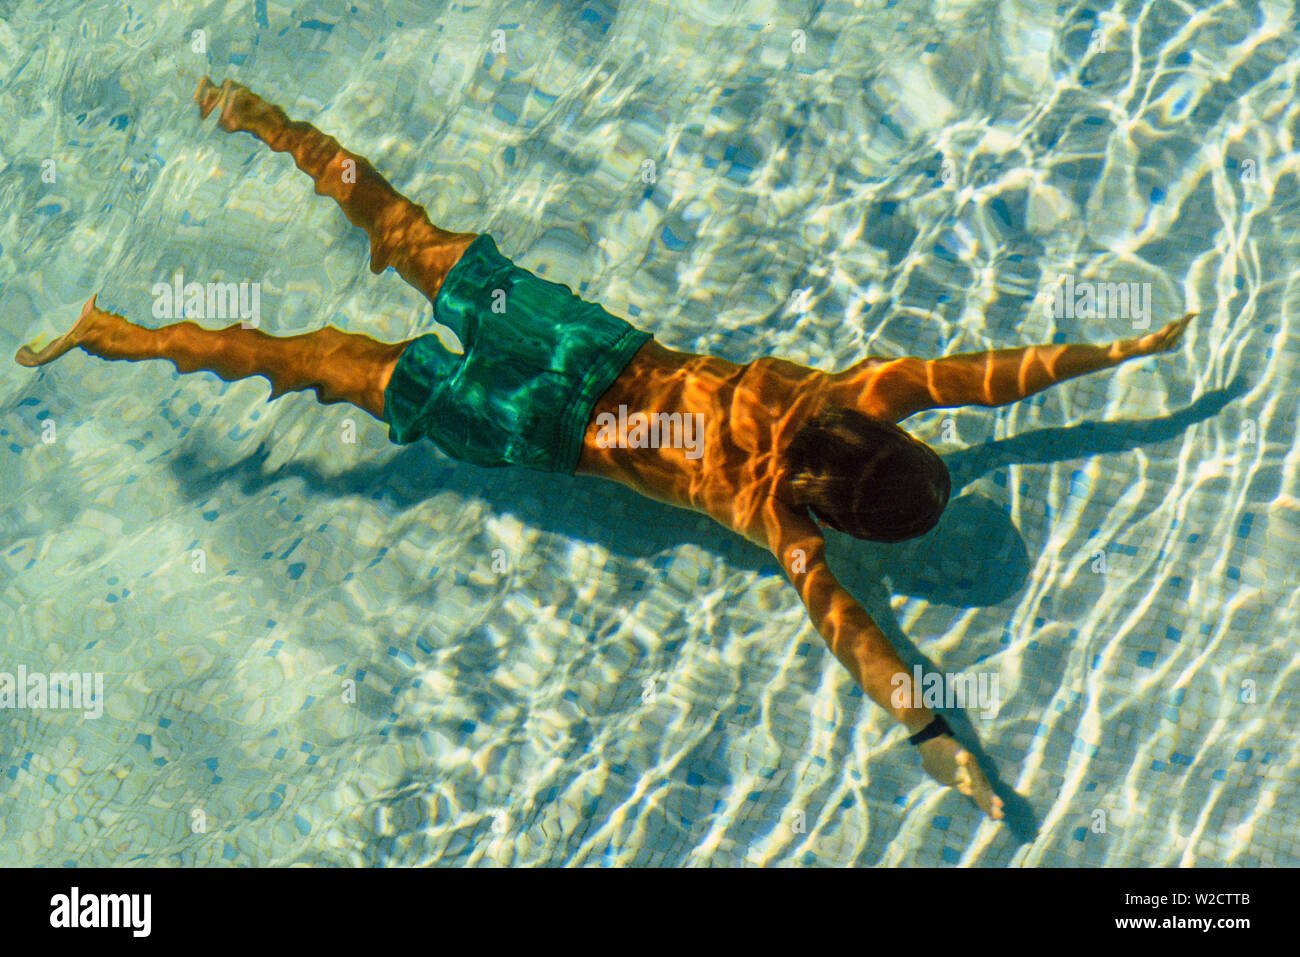 Córcega, Francia. De agosto de 1990. Un muchacho nadar en una piscina. Foto: © Simon Grosset. Archivo: Imagen digitalizada de una transparencia original. Foto de stock